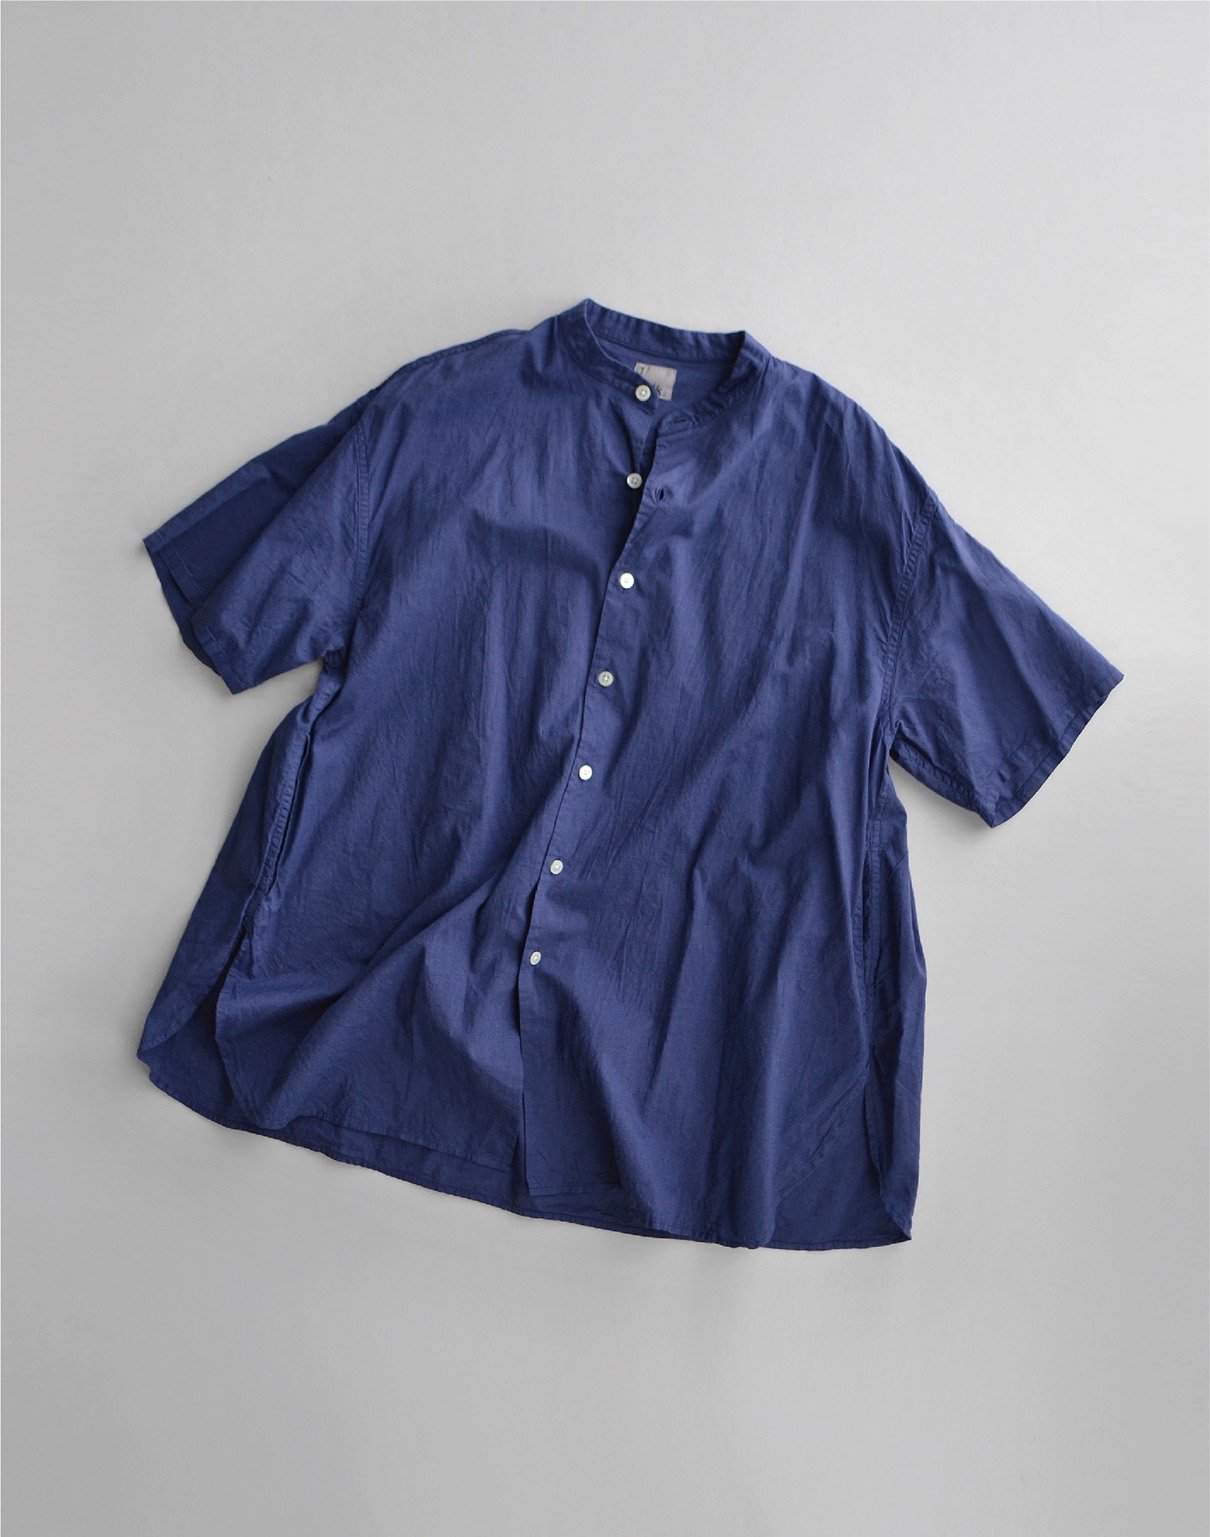 holk S/S shirt blue